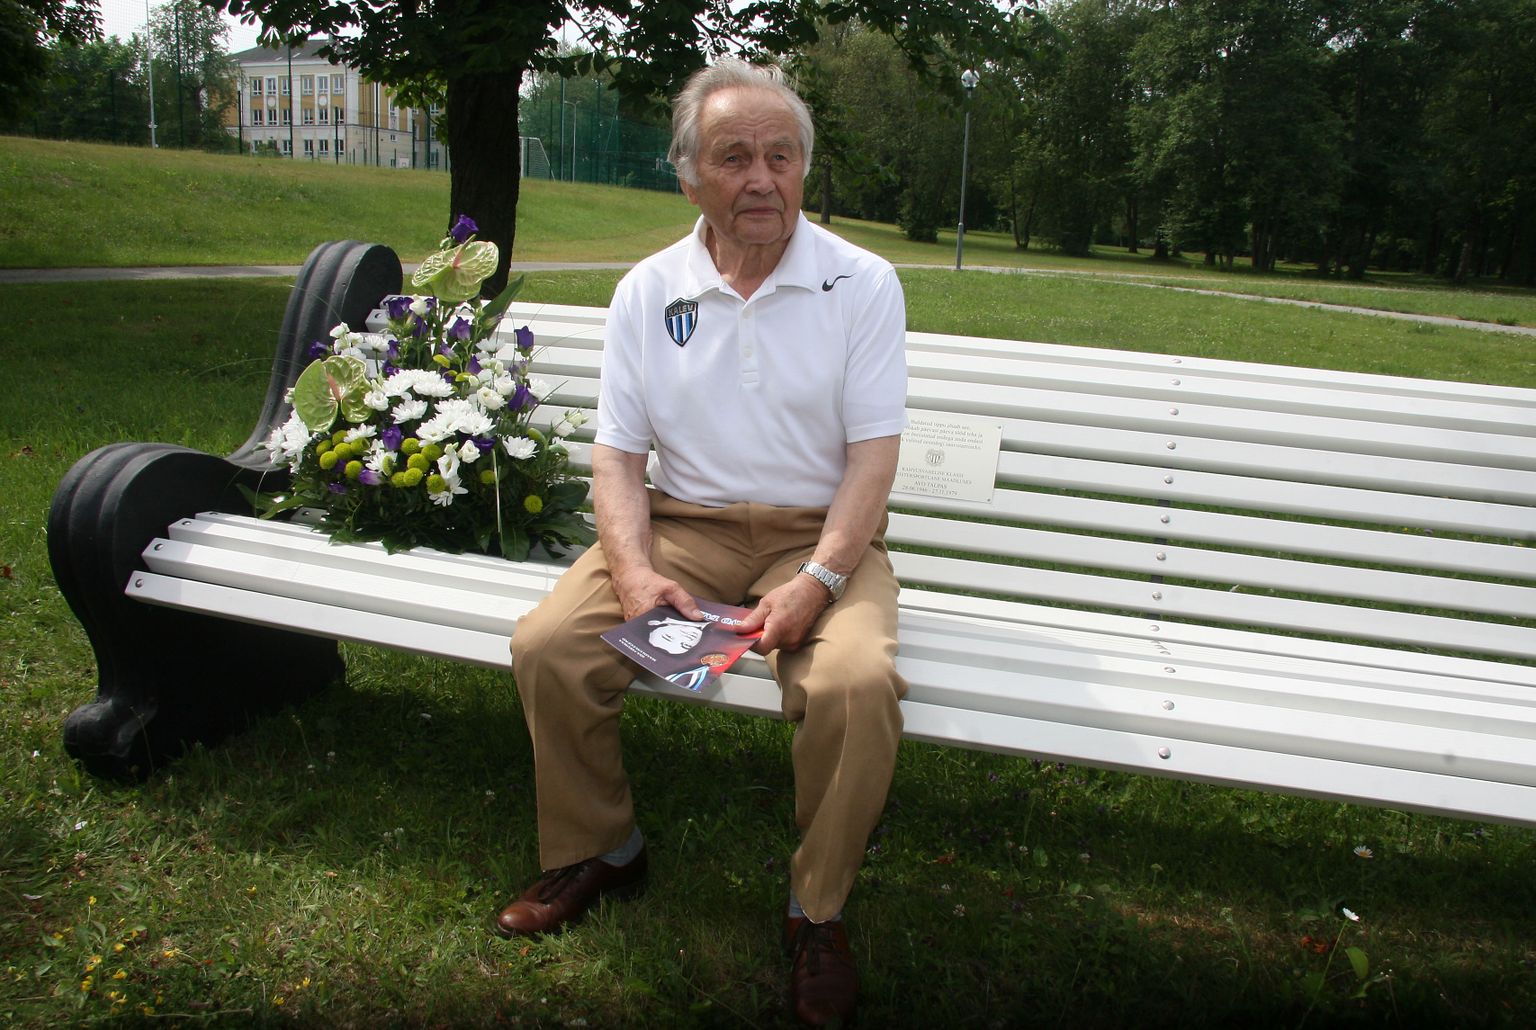 Ильмар Талусте 42 года проводил мемориал своего ровесника Аво Тапласа и под его руководством в Кохтла-Ярве установили также памятную скамью в честь борцовской знаменитости.